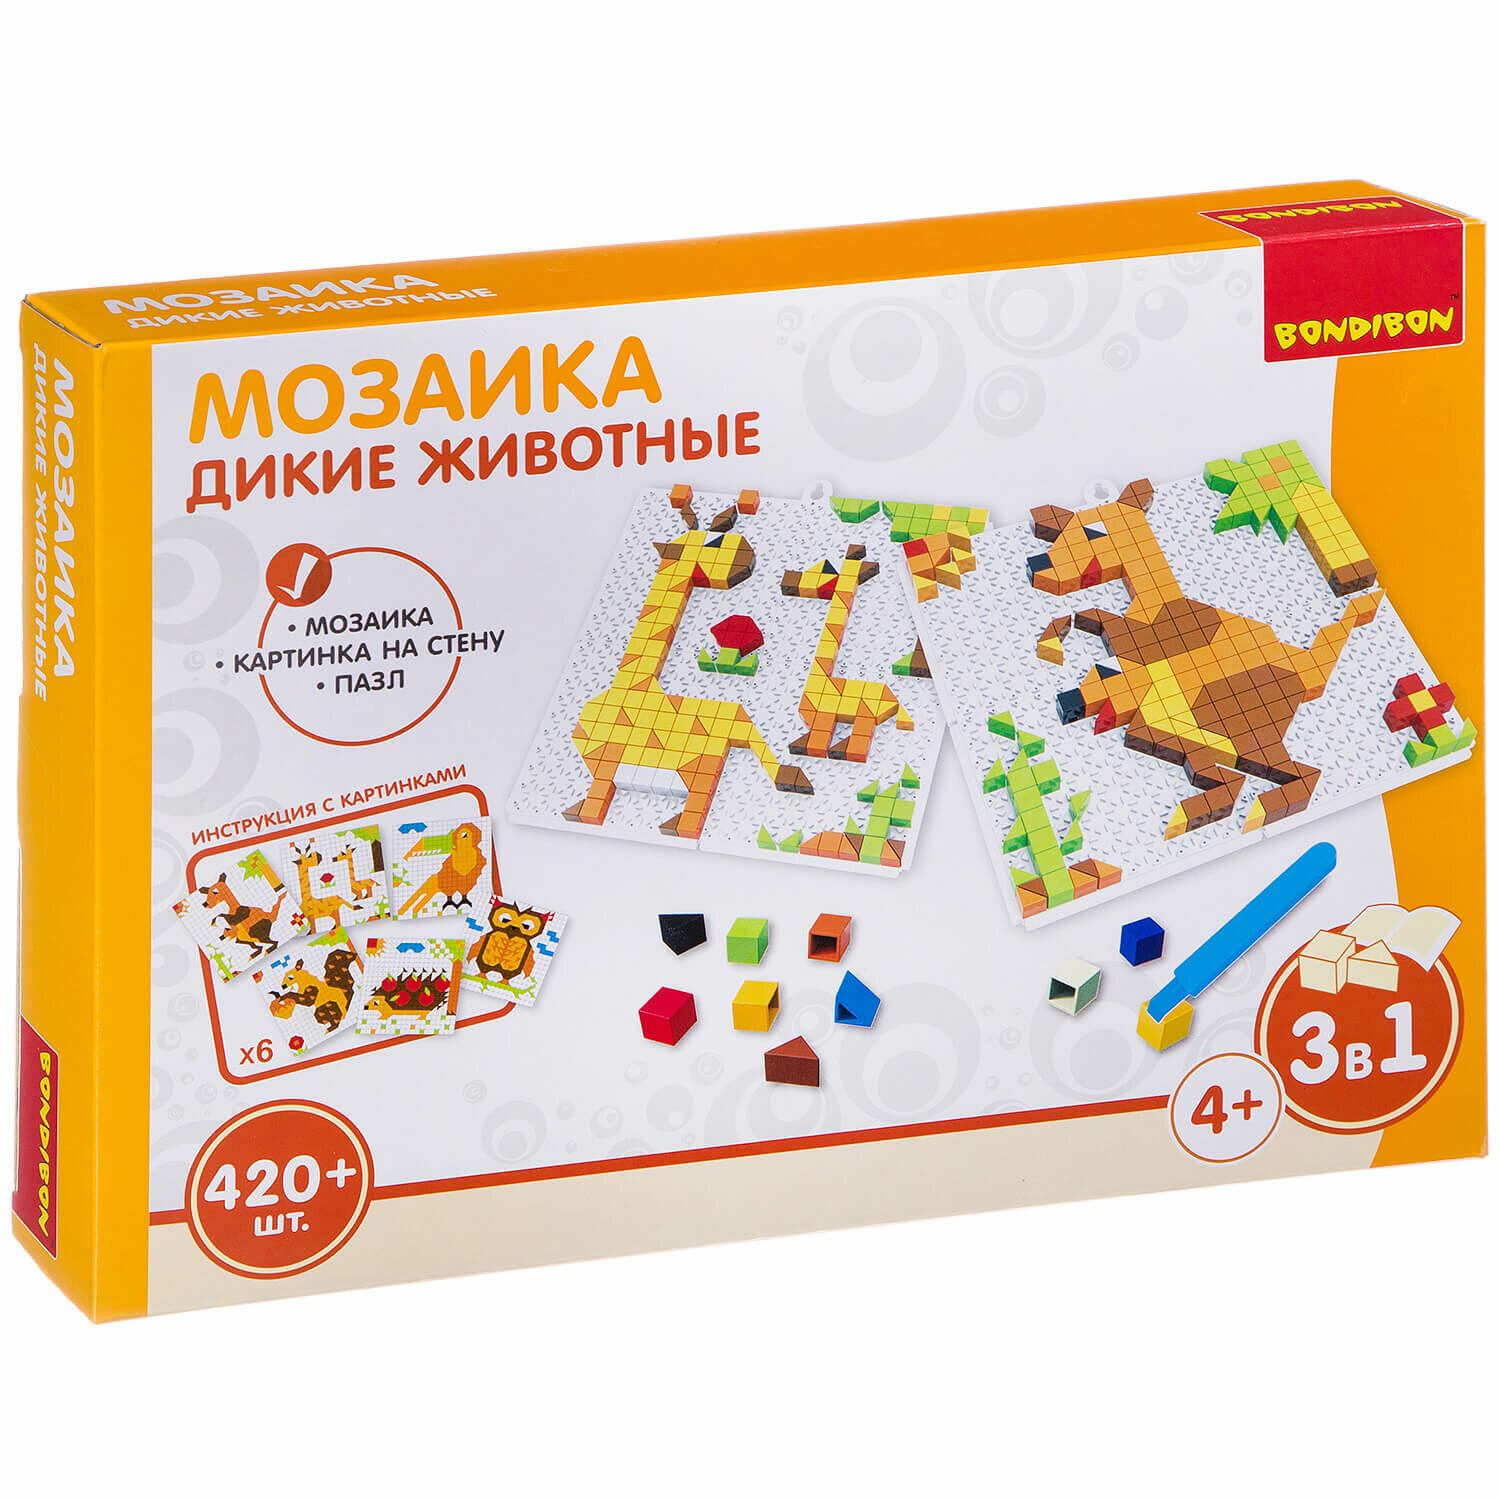 Логические, развивающие игры и игрушки Bondibon Мозаика «дикие животные», 420 дет, BOX 30x4.5x21 см ВВ3032